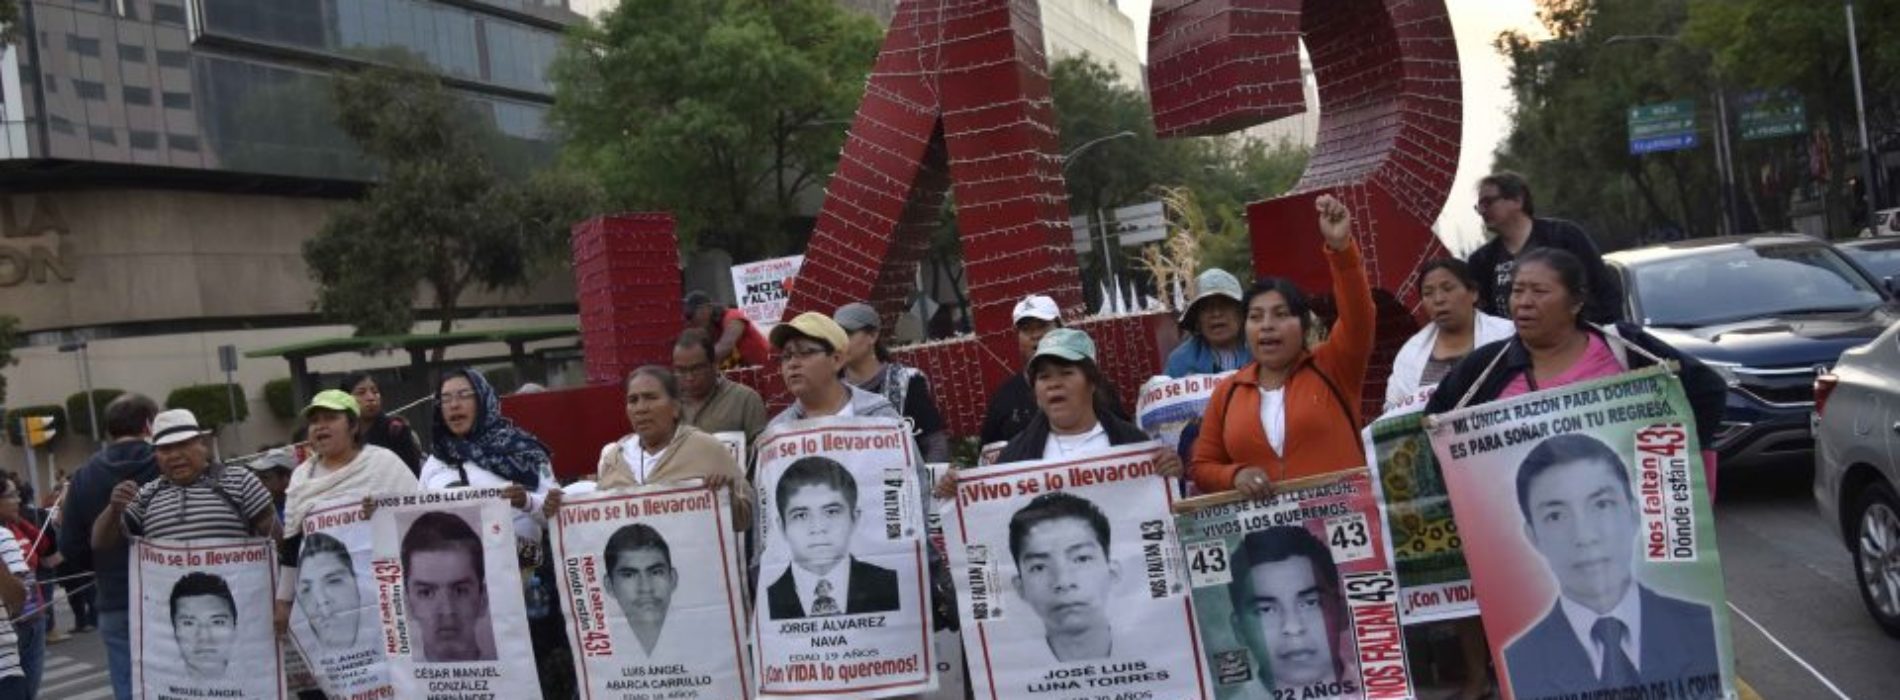 Autoridades torturaron a detenidos por caso Ayotzinapa para
obtener confesiones: ONU